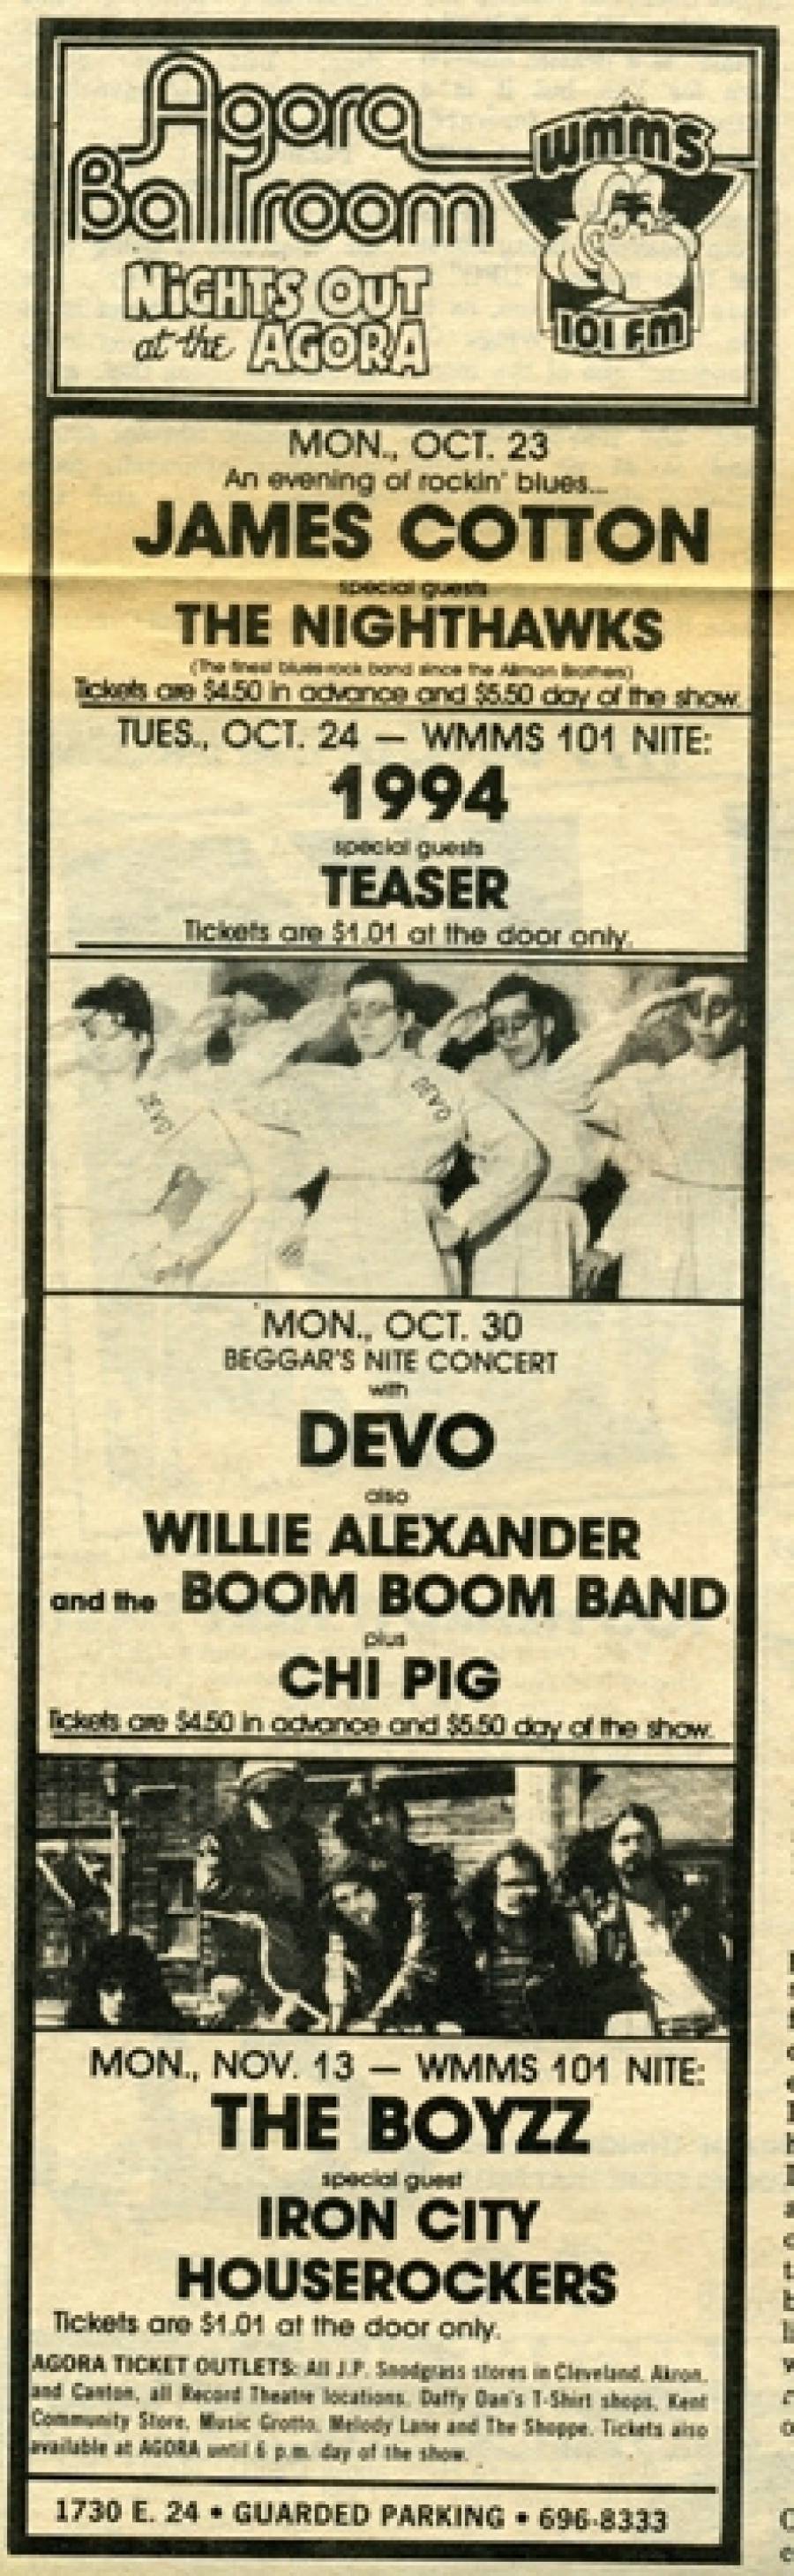 Agora Ballroom Show Advert 1978